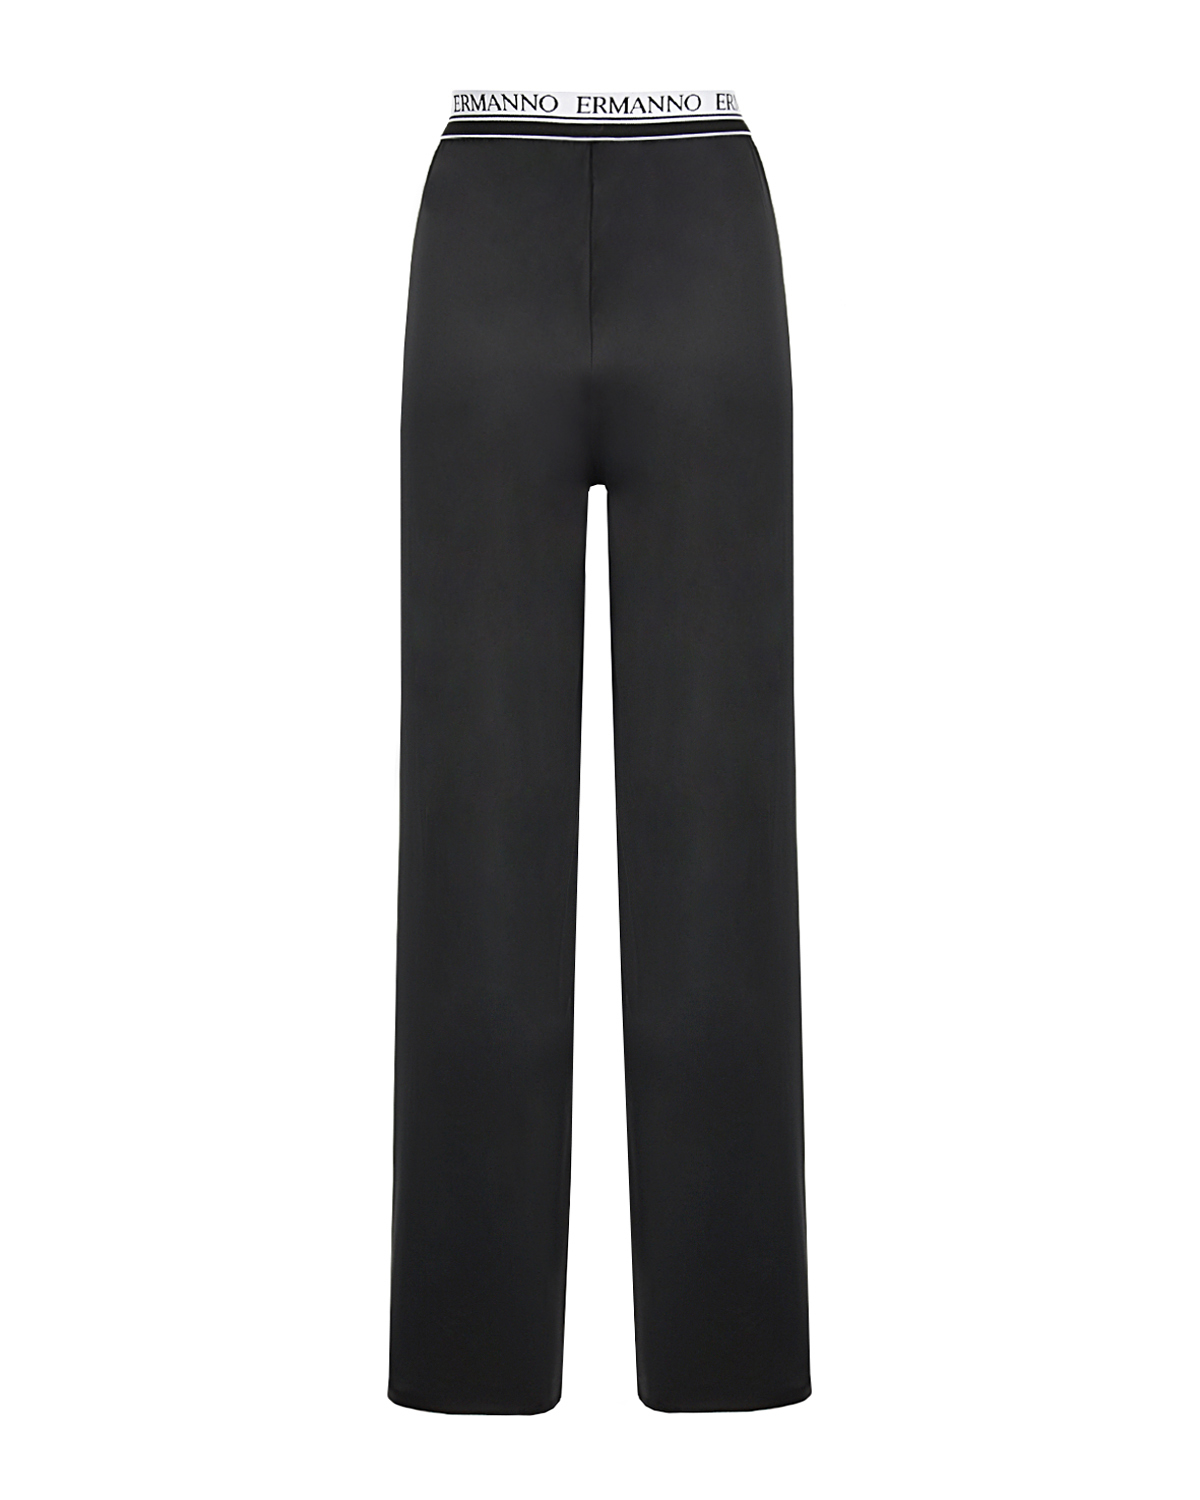 Черные брюки с поясом на резинке Ermanno Ermanno Scervino, размер 44, цвет черный - фото 2